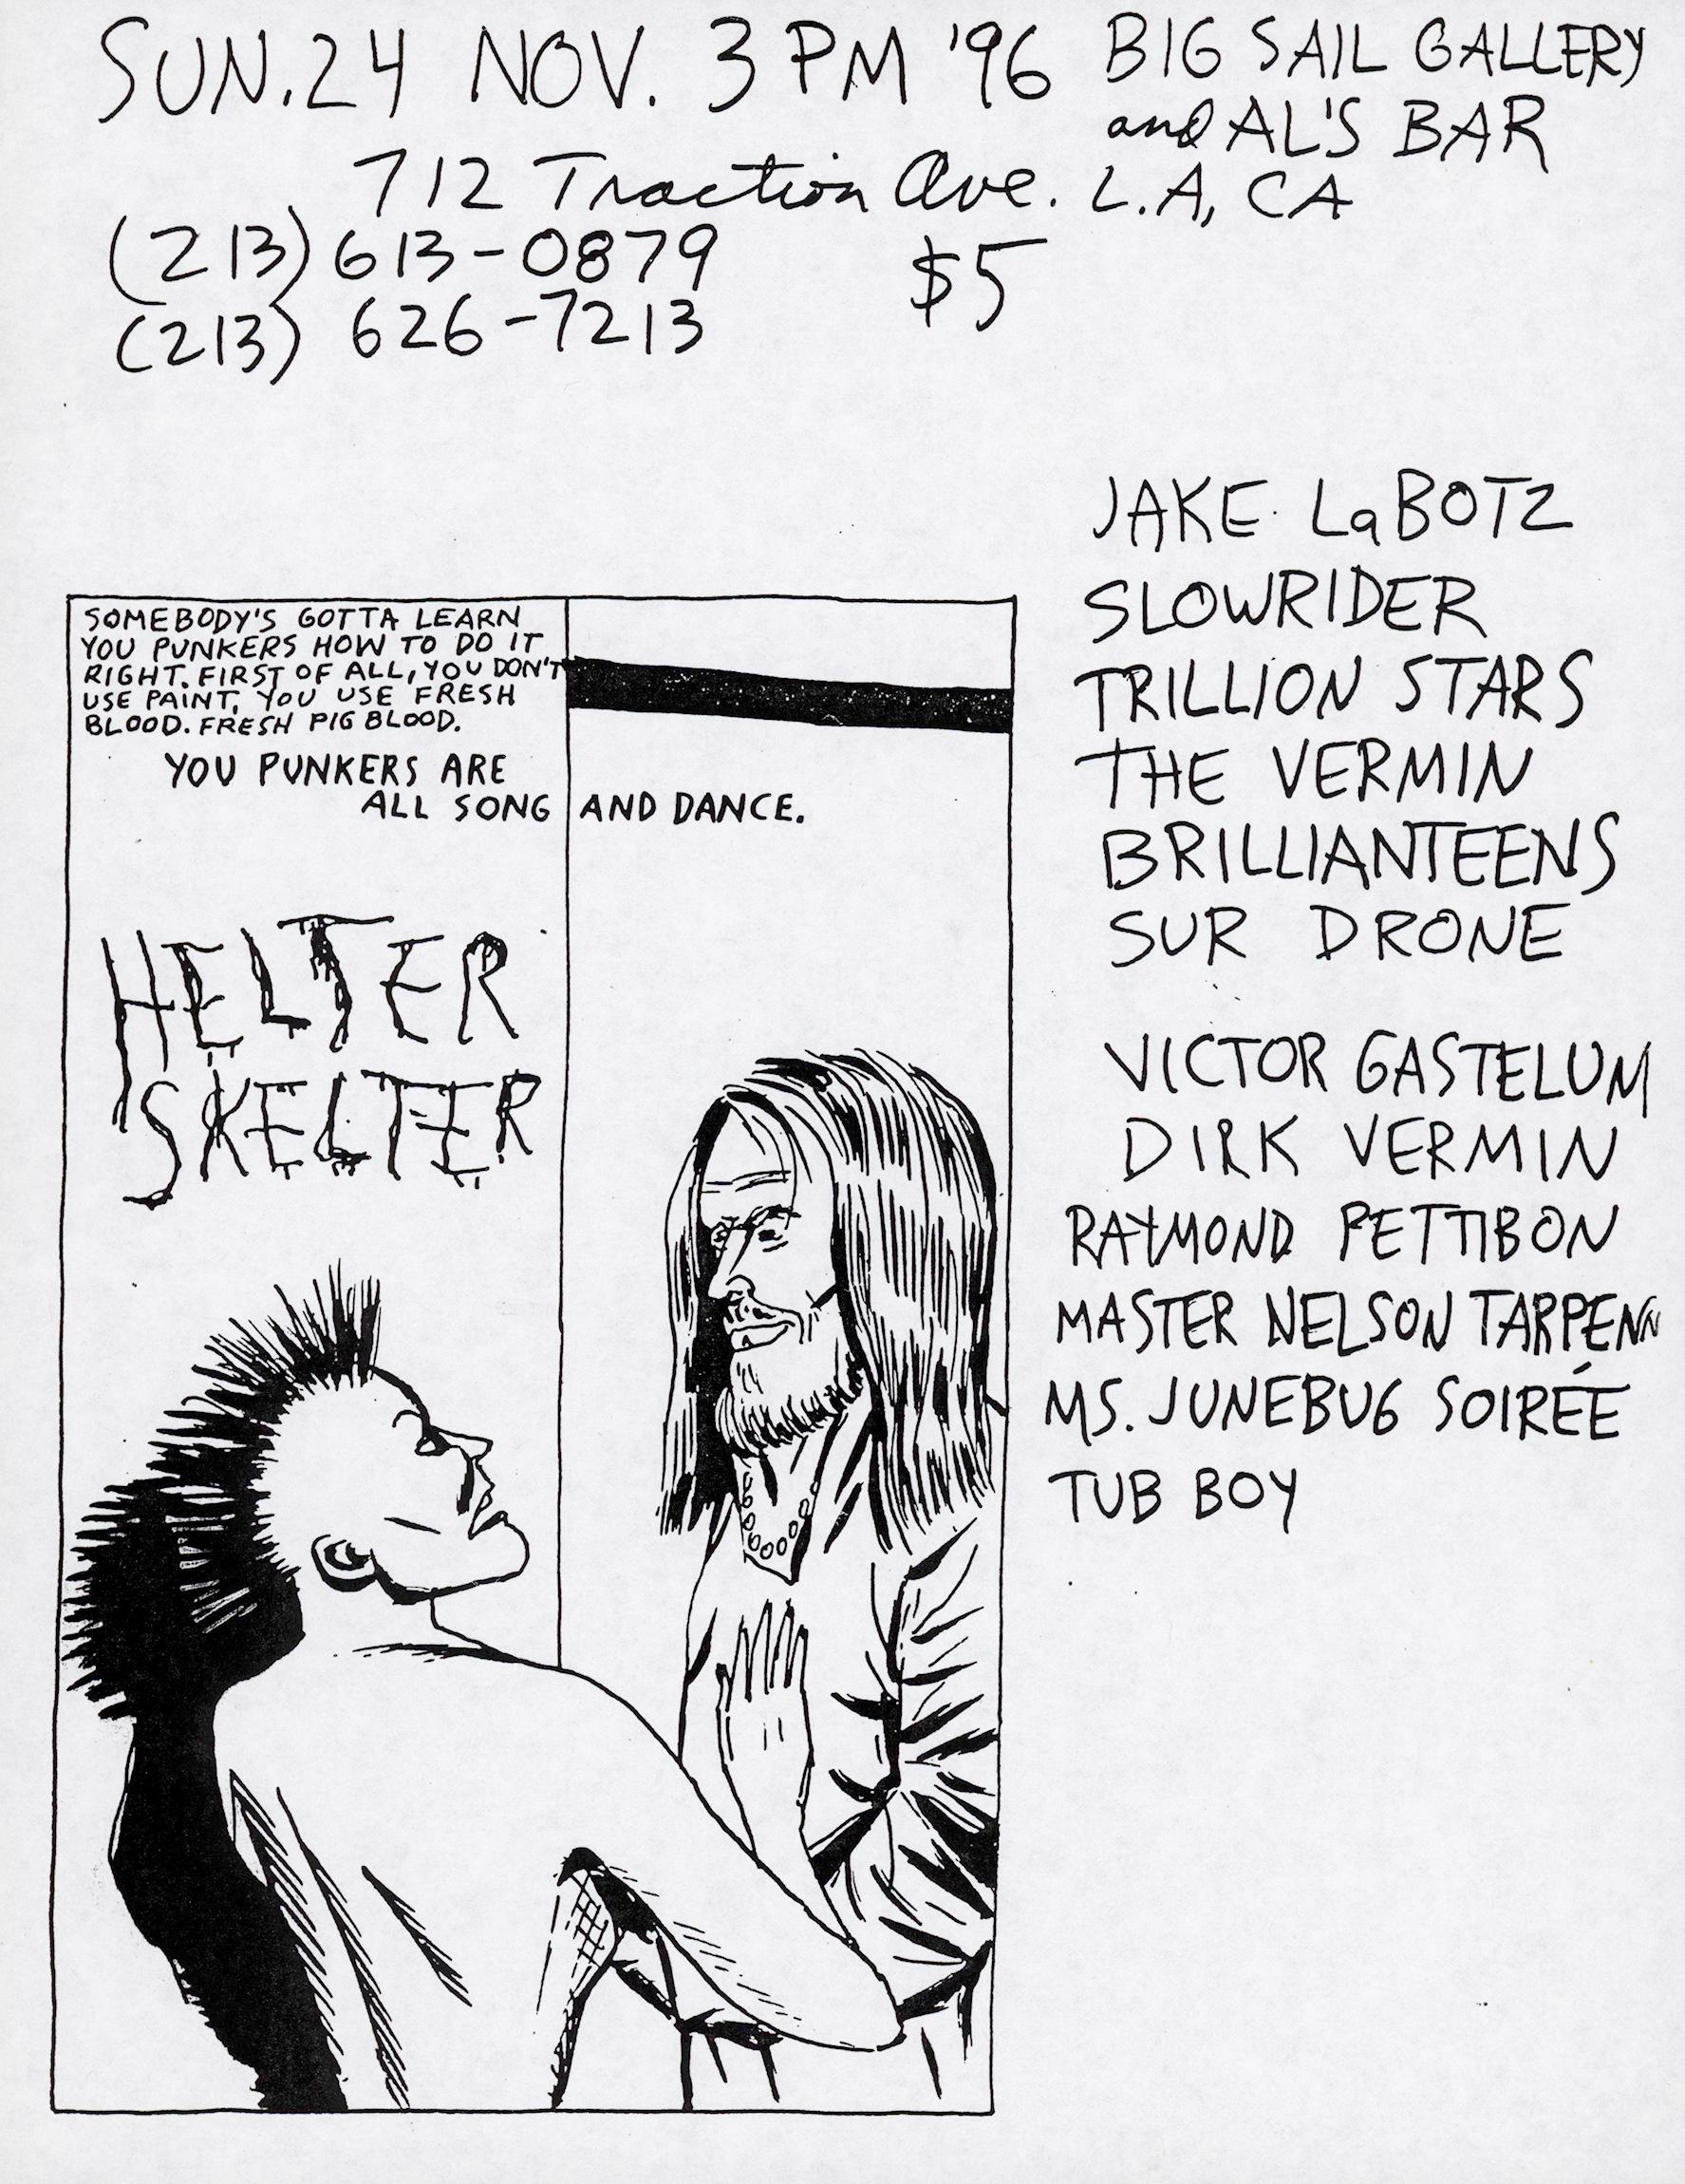 Raymond Pettibon illustrierte Punk-Flyer 1996:u2028
Sehr seltener, von Raymond Pettibon illustrierter Punk-Flyer aus dem Jahr 1996 für einen Veranstaltungsort in Los Angeles, Kalifornien, wo Pettibon im Kreise seiner Freunde auftrat (Pettibon wird